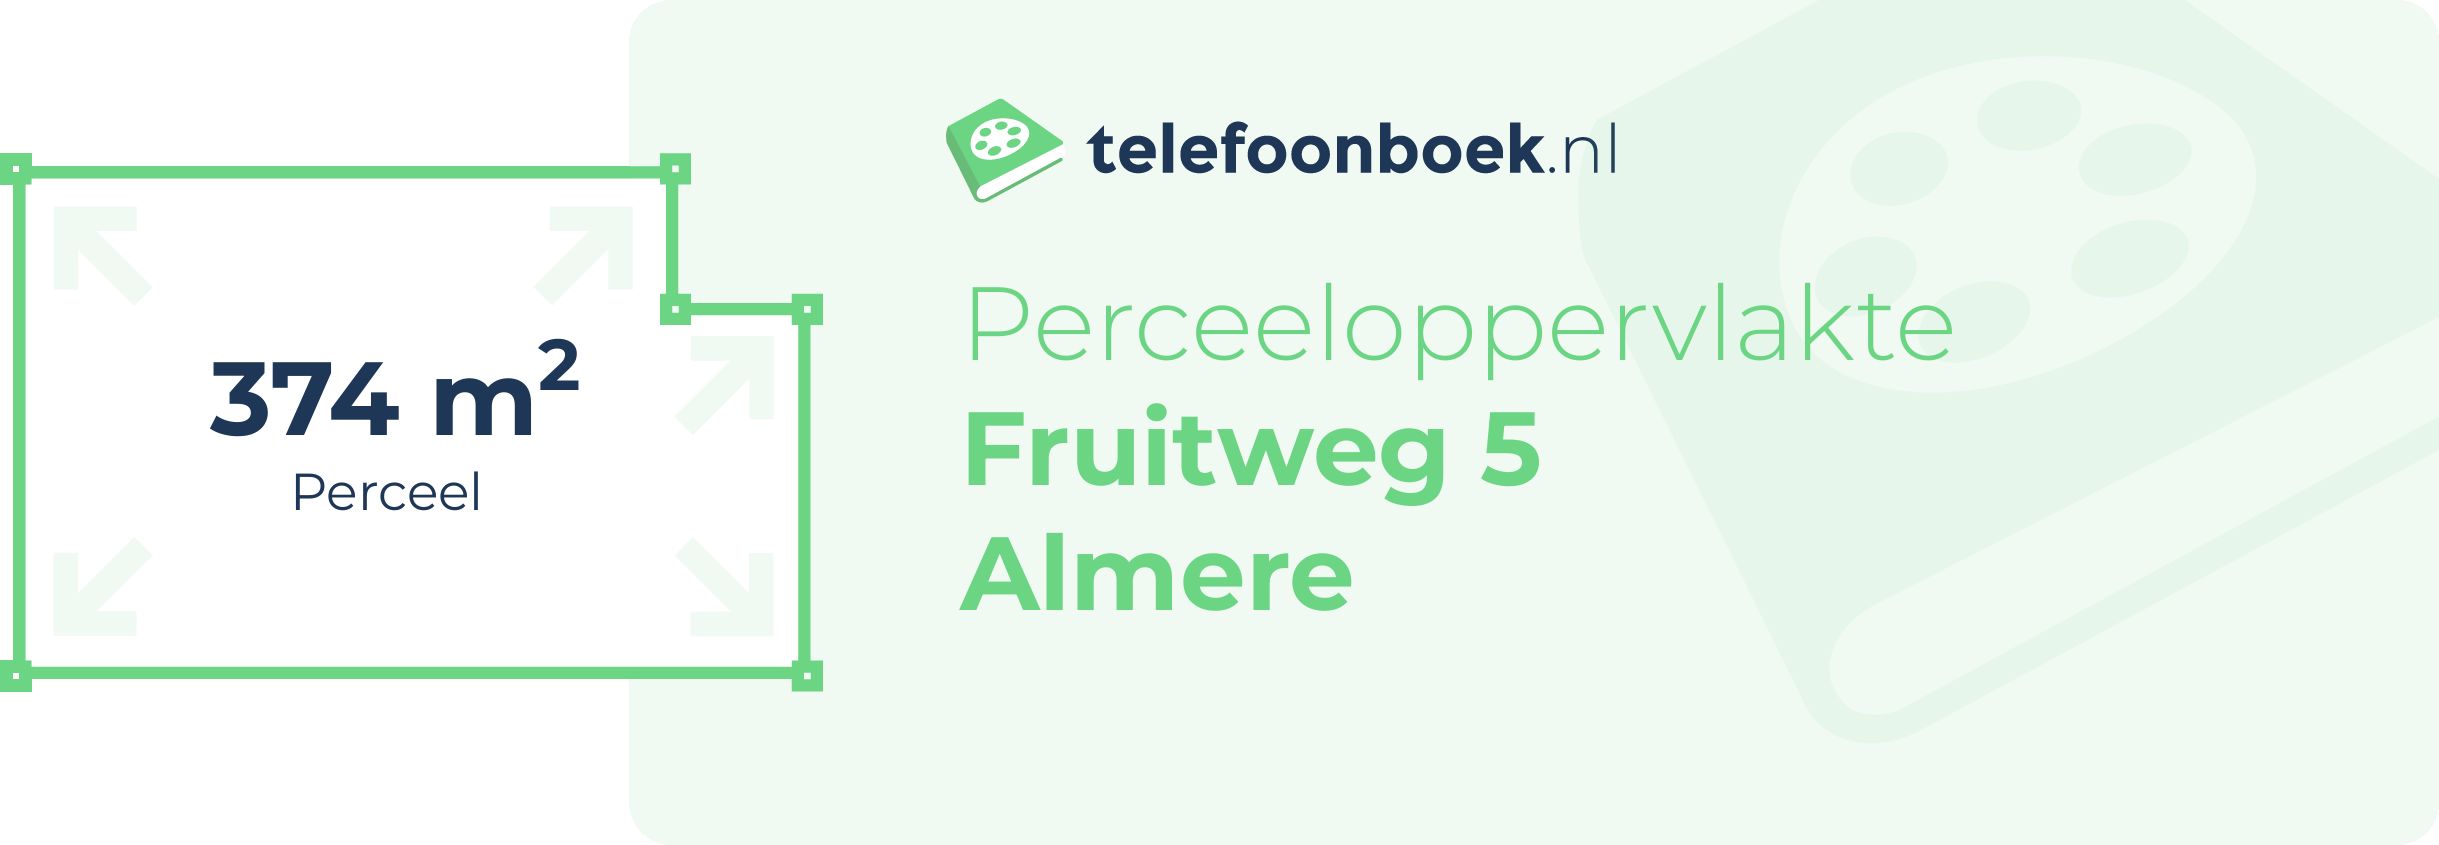 Perceeloppervlakte Fruitweg 5 Almere